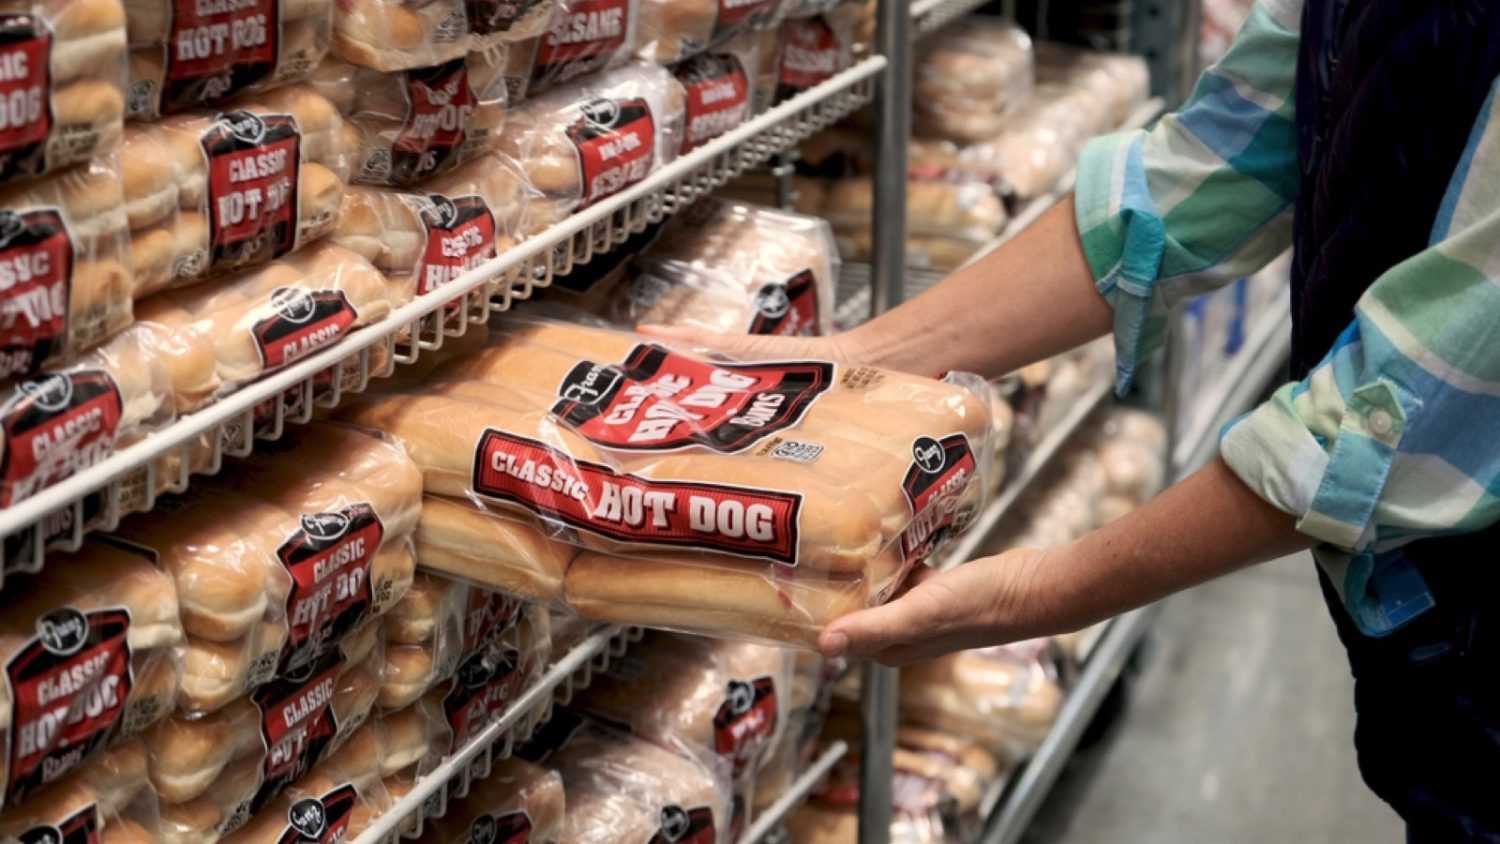 Woman buying Hotdog Buns at supermarket